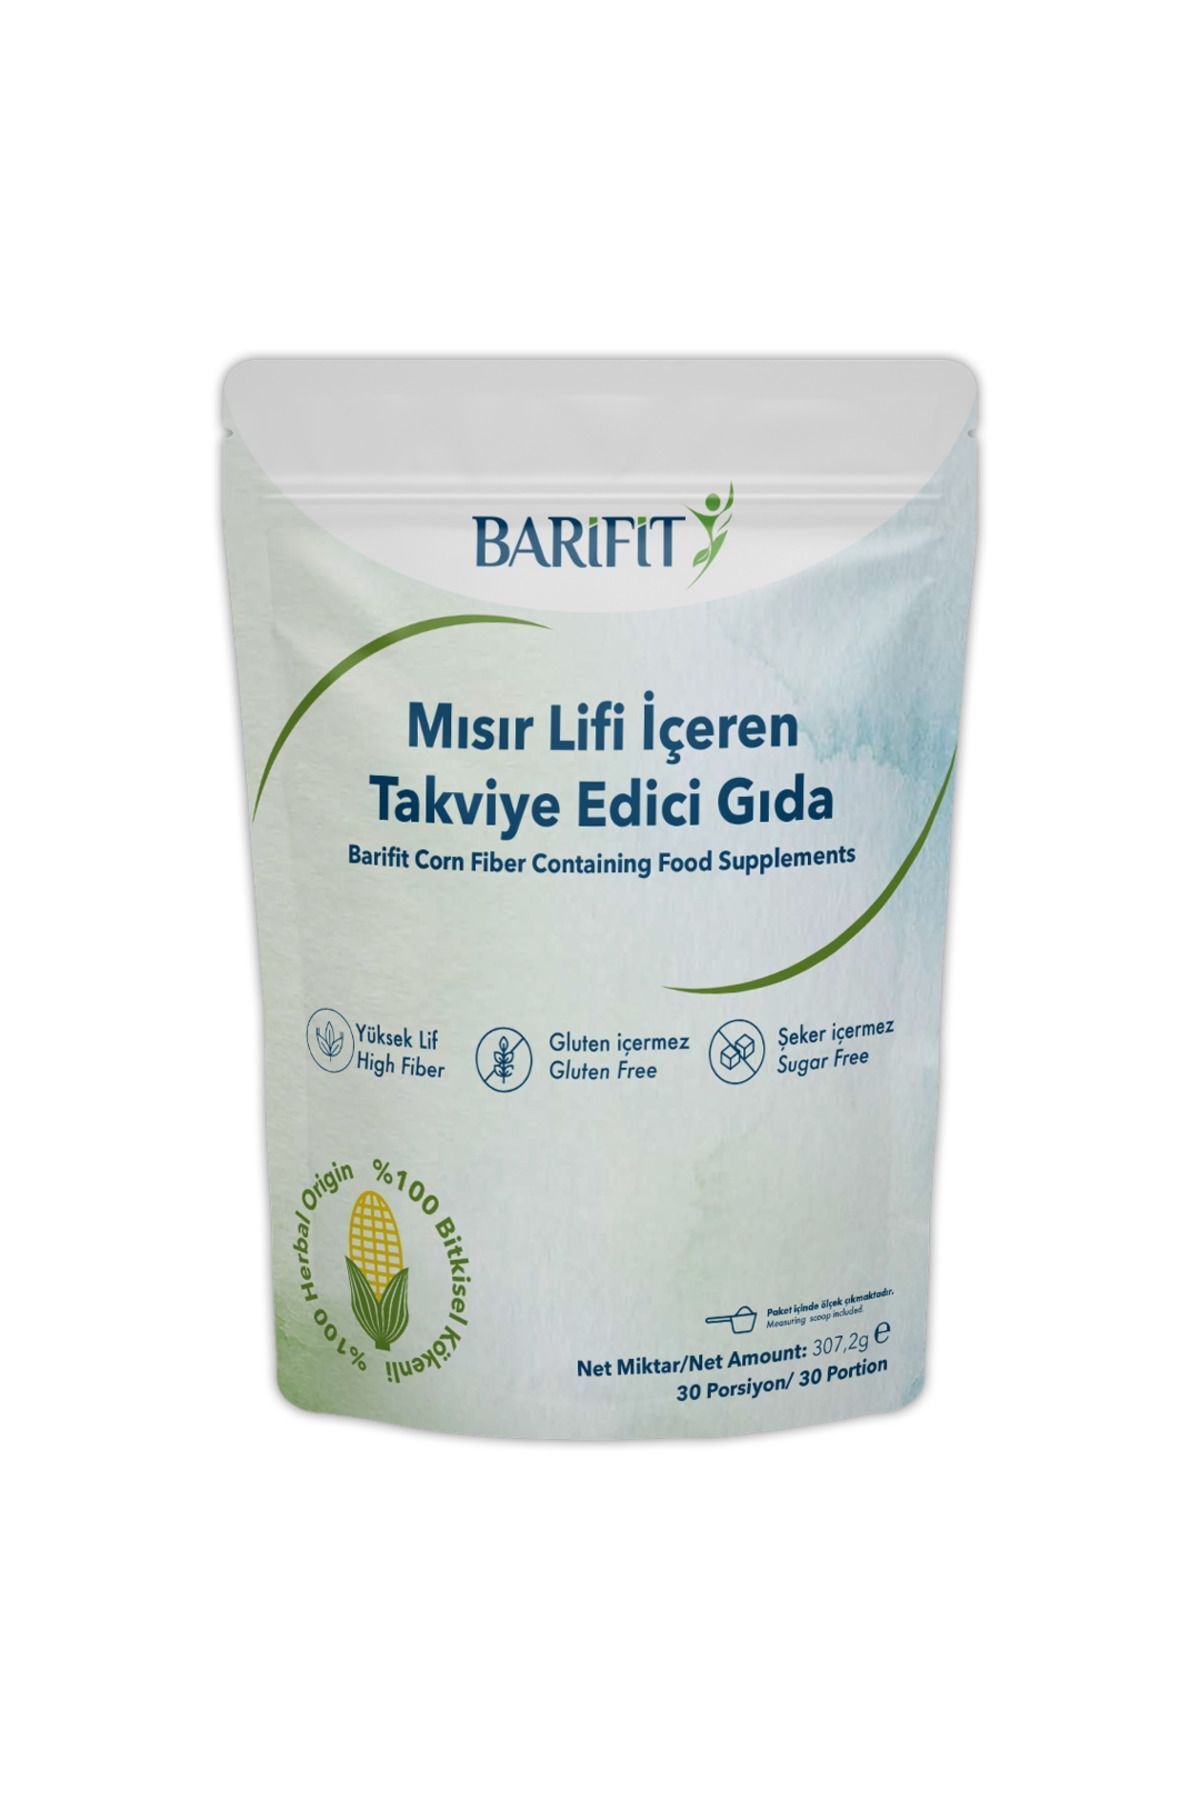 Barifit ® Mısır Lifi içeren Takviye Edici Gıda